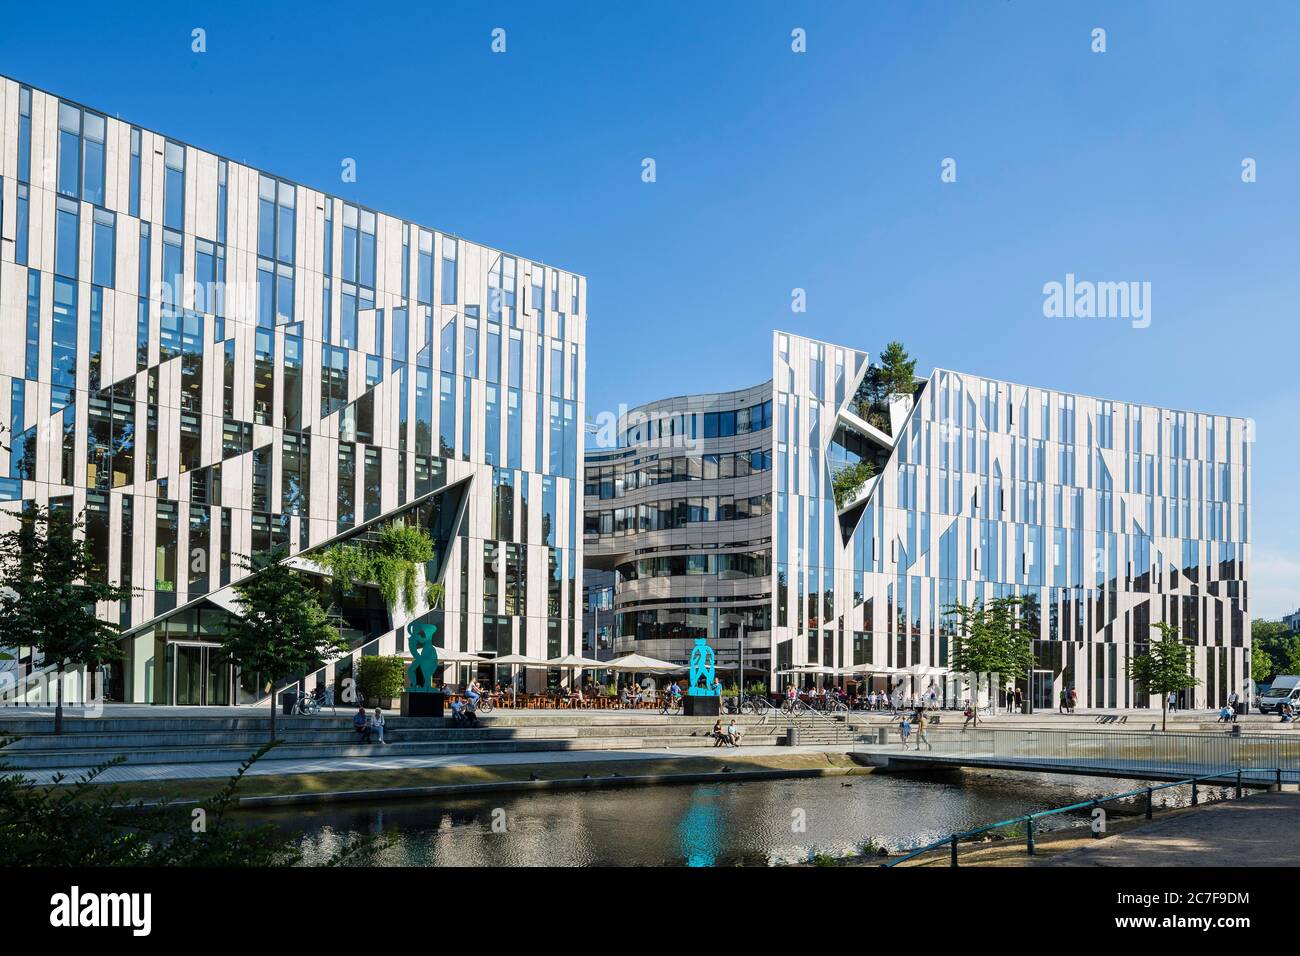 Complexe de bureaux et de commerces de détail Koe-Bogen par l'architecte Daniel Libeskind, Düsseldorf, Rhénanie-du-Nord-Westphalie, Allemagne Banque D'Images